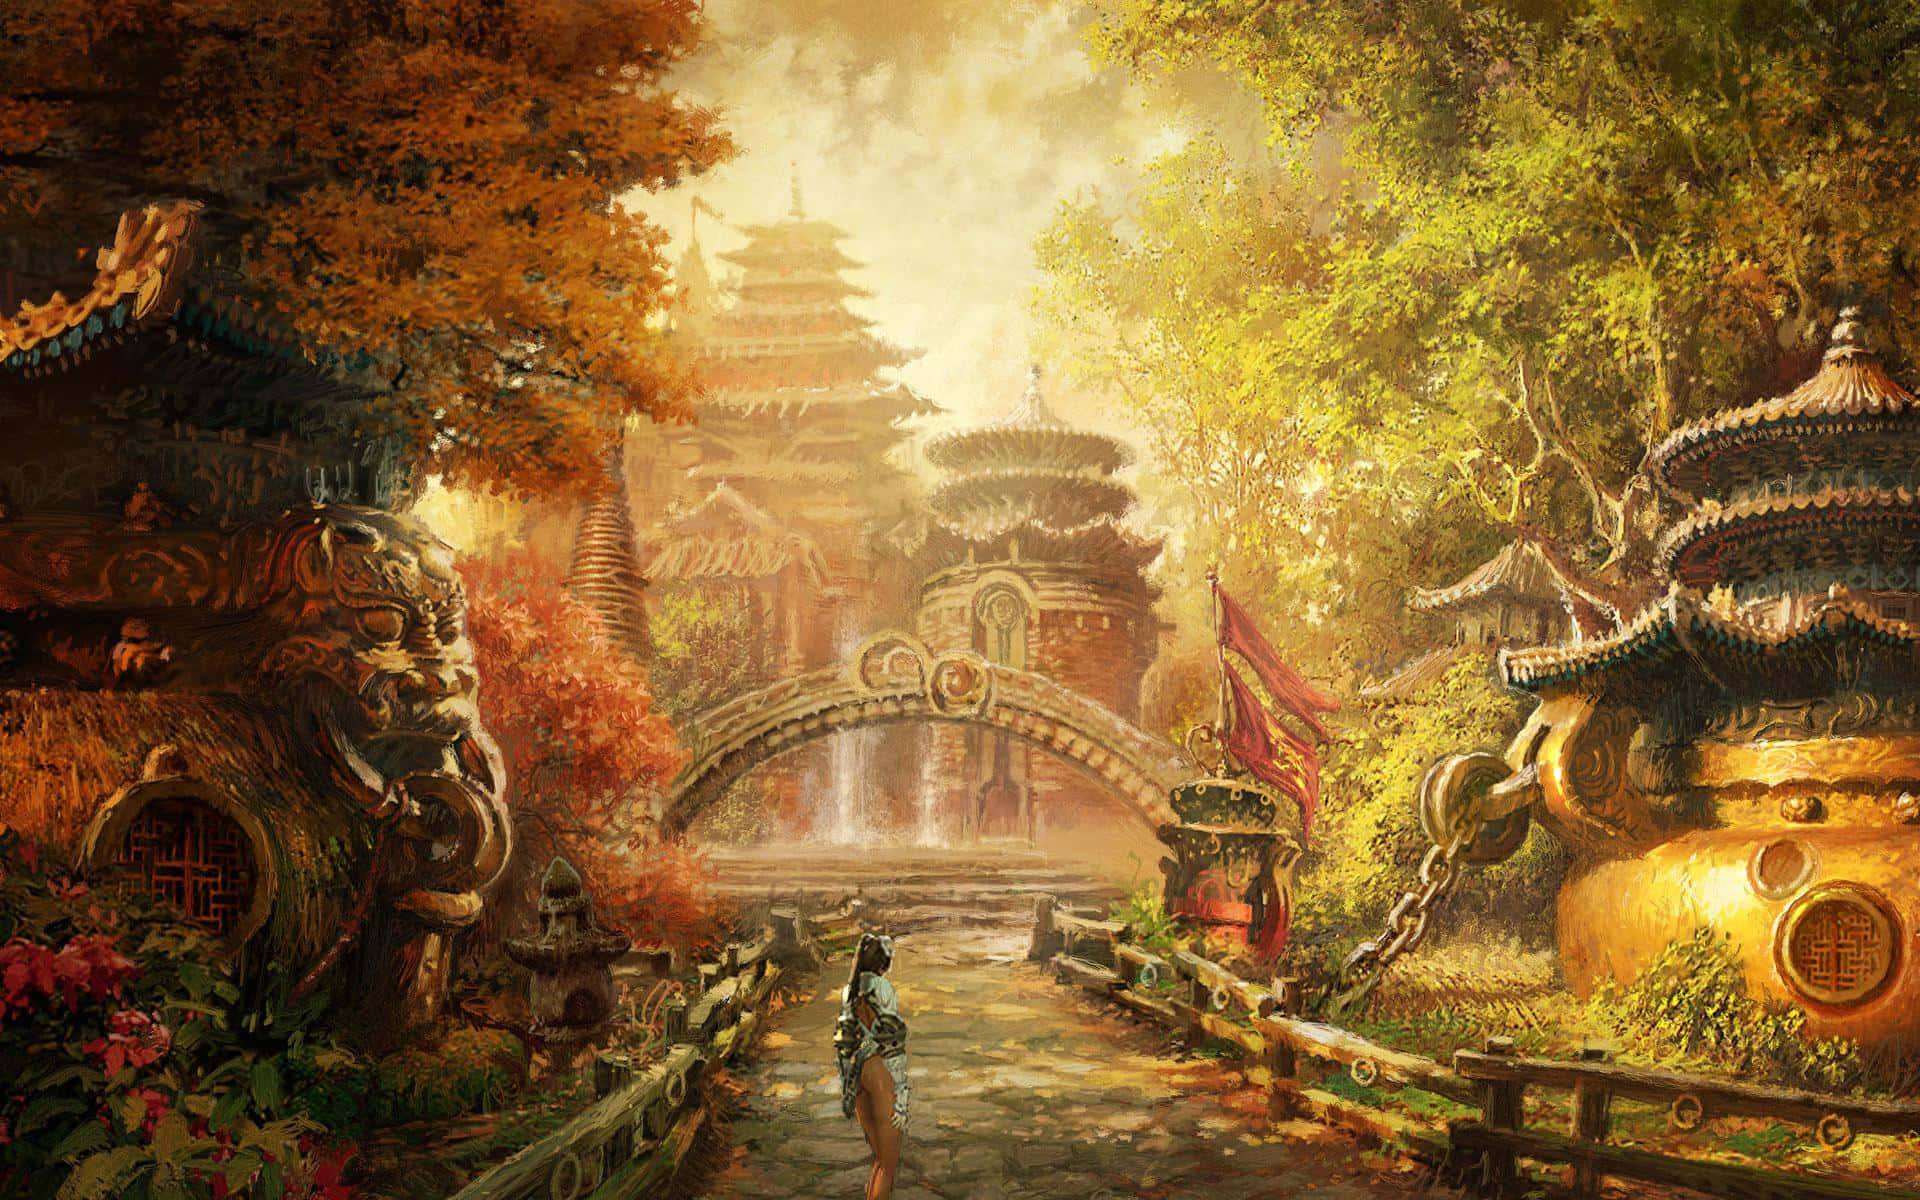 Enchanting Twilight In Fantasy Gardens Wallpaper